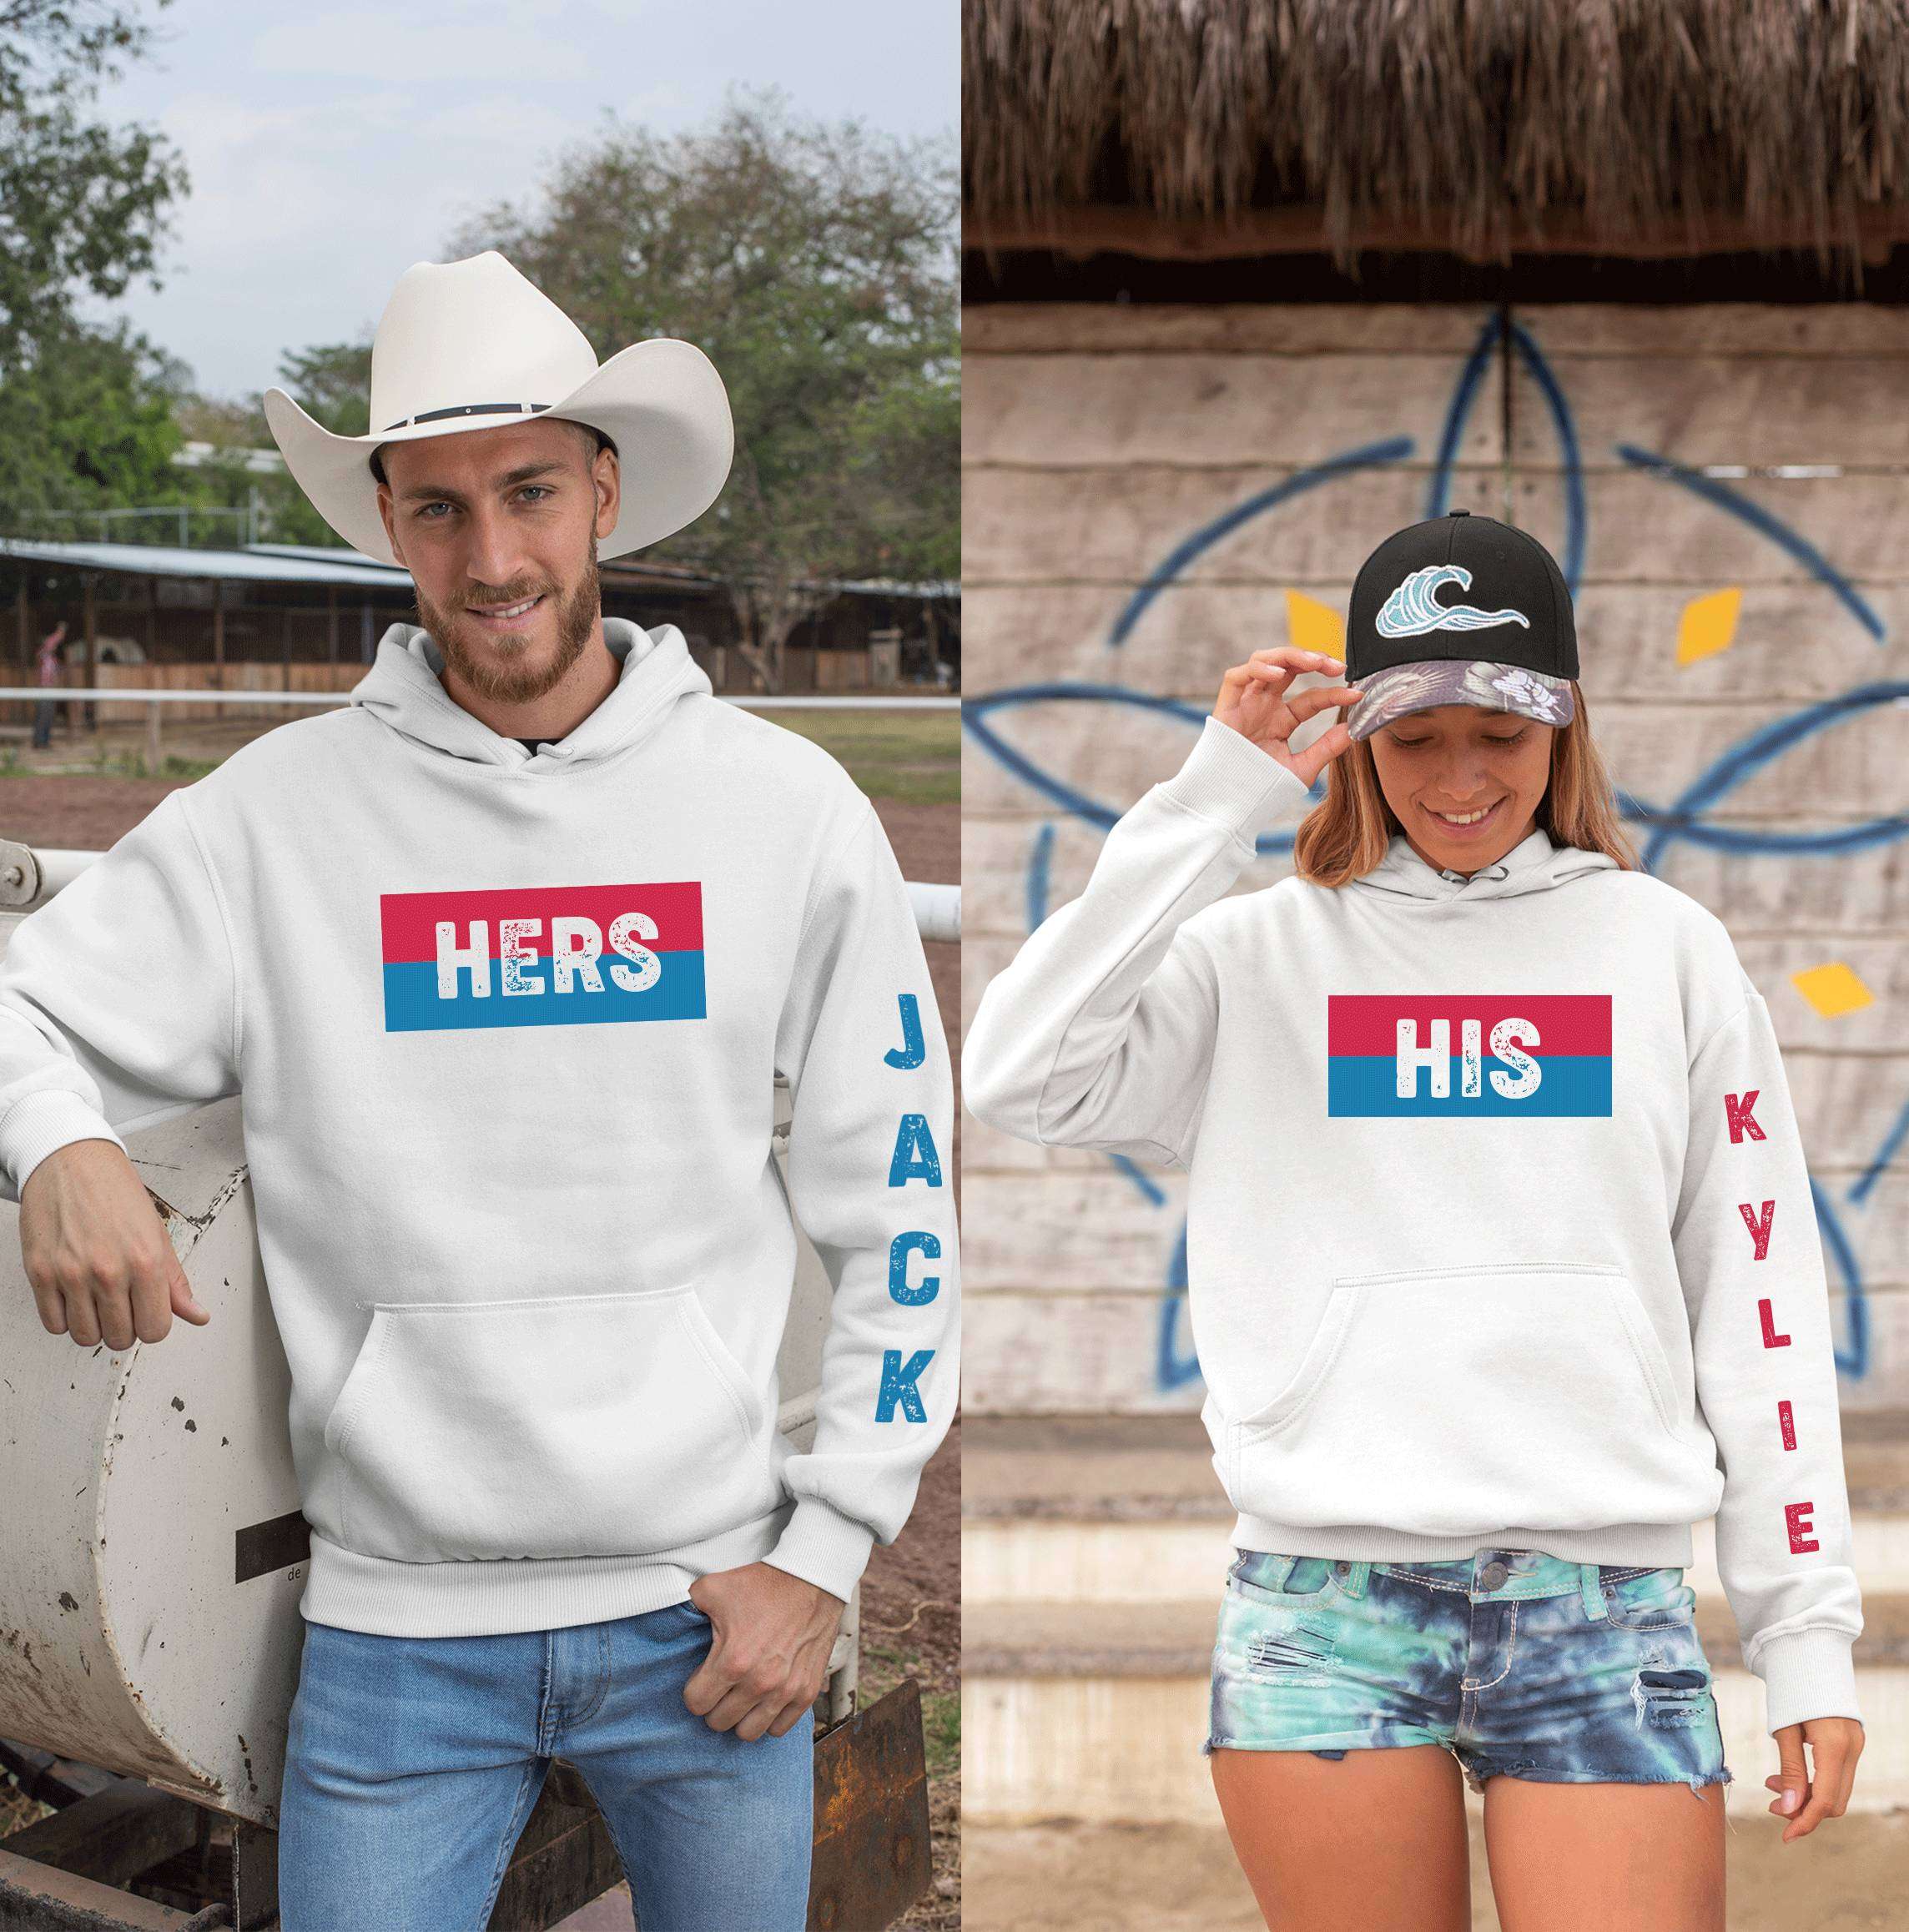 boyfriend and girlfriend matching sweaters